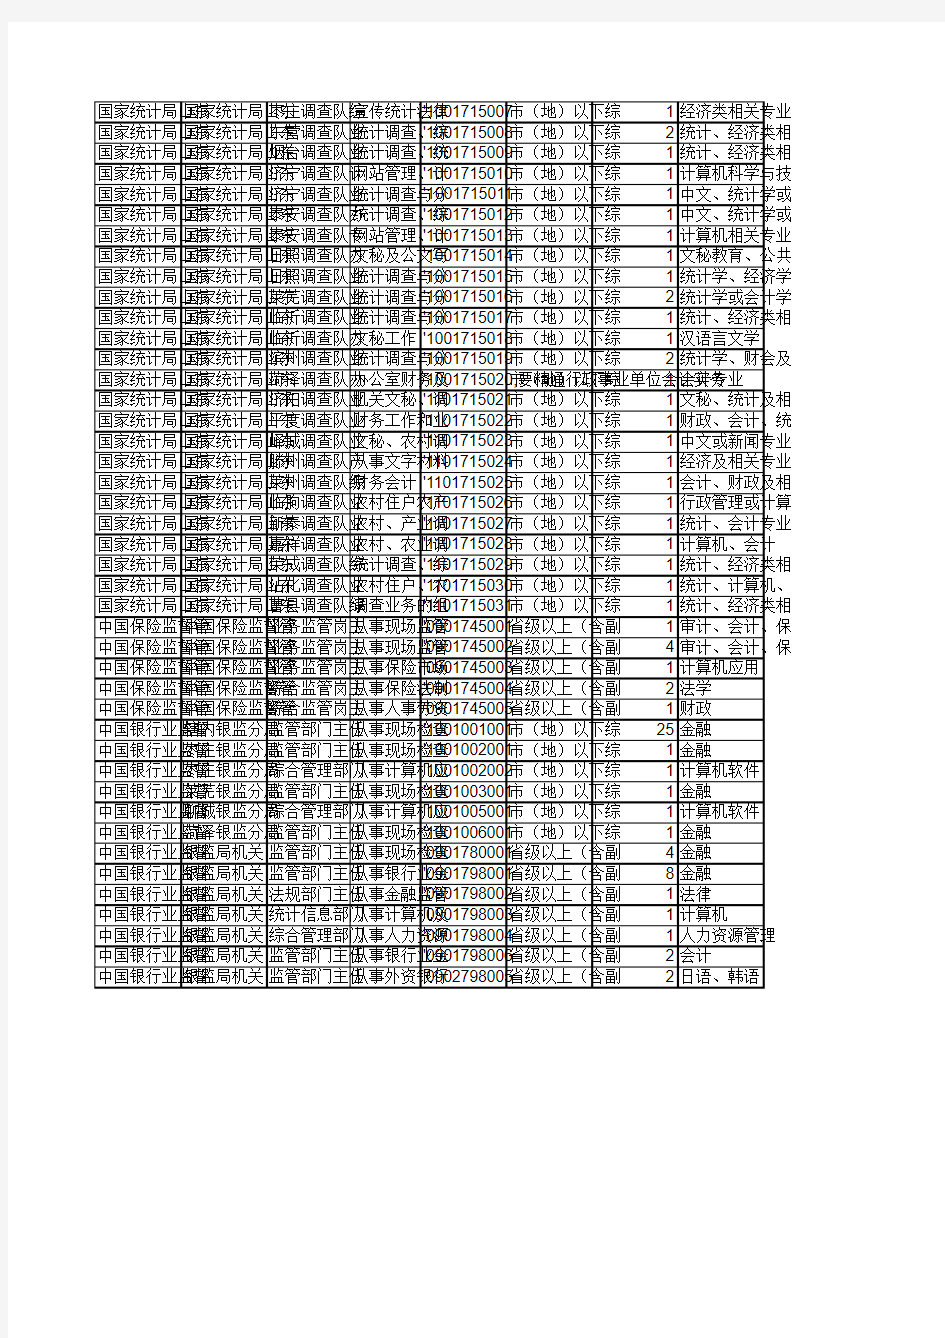 2010年国家公务员考试招考职位表(山东部分)